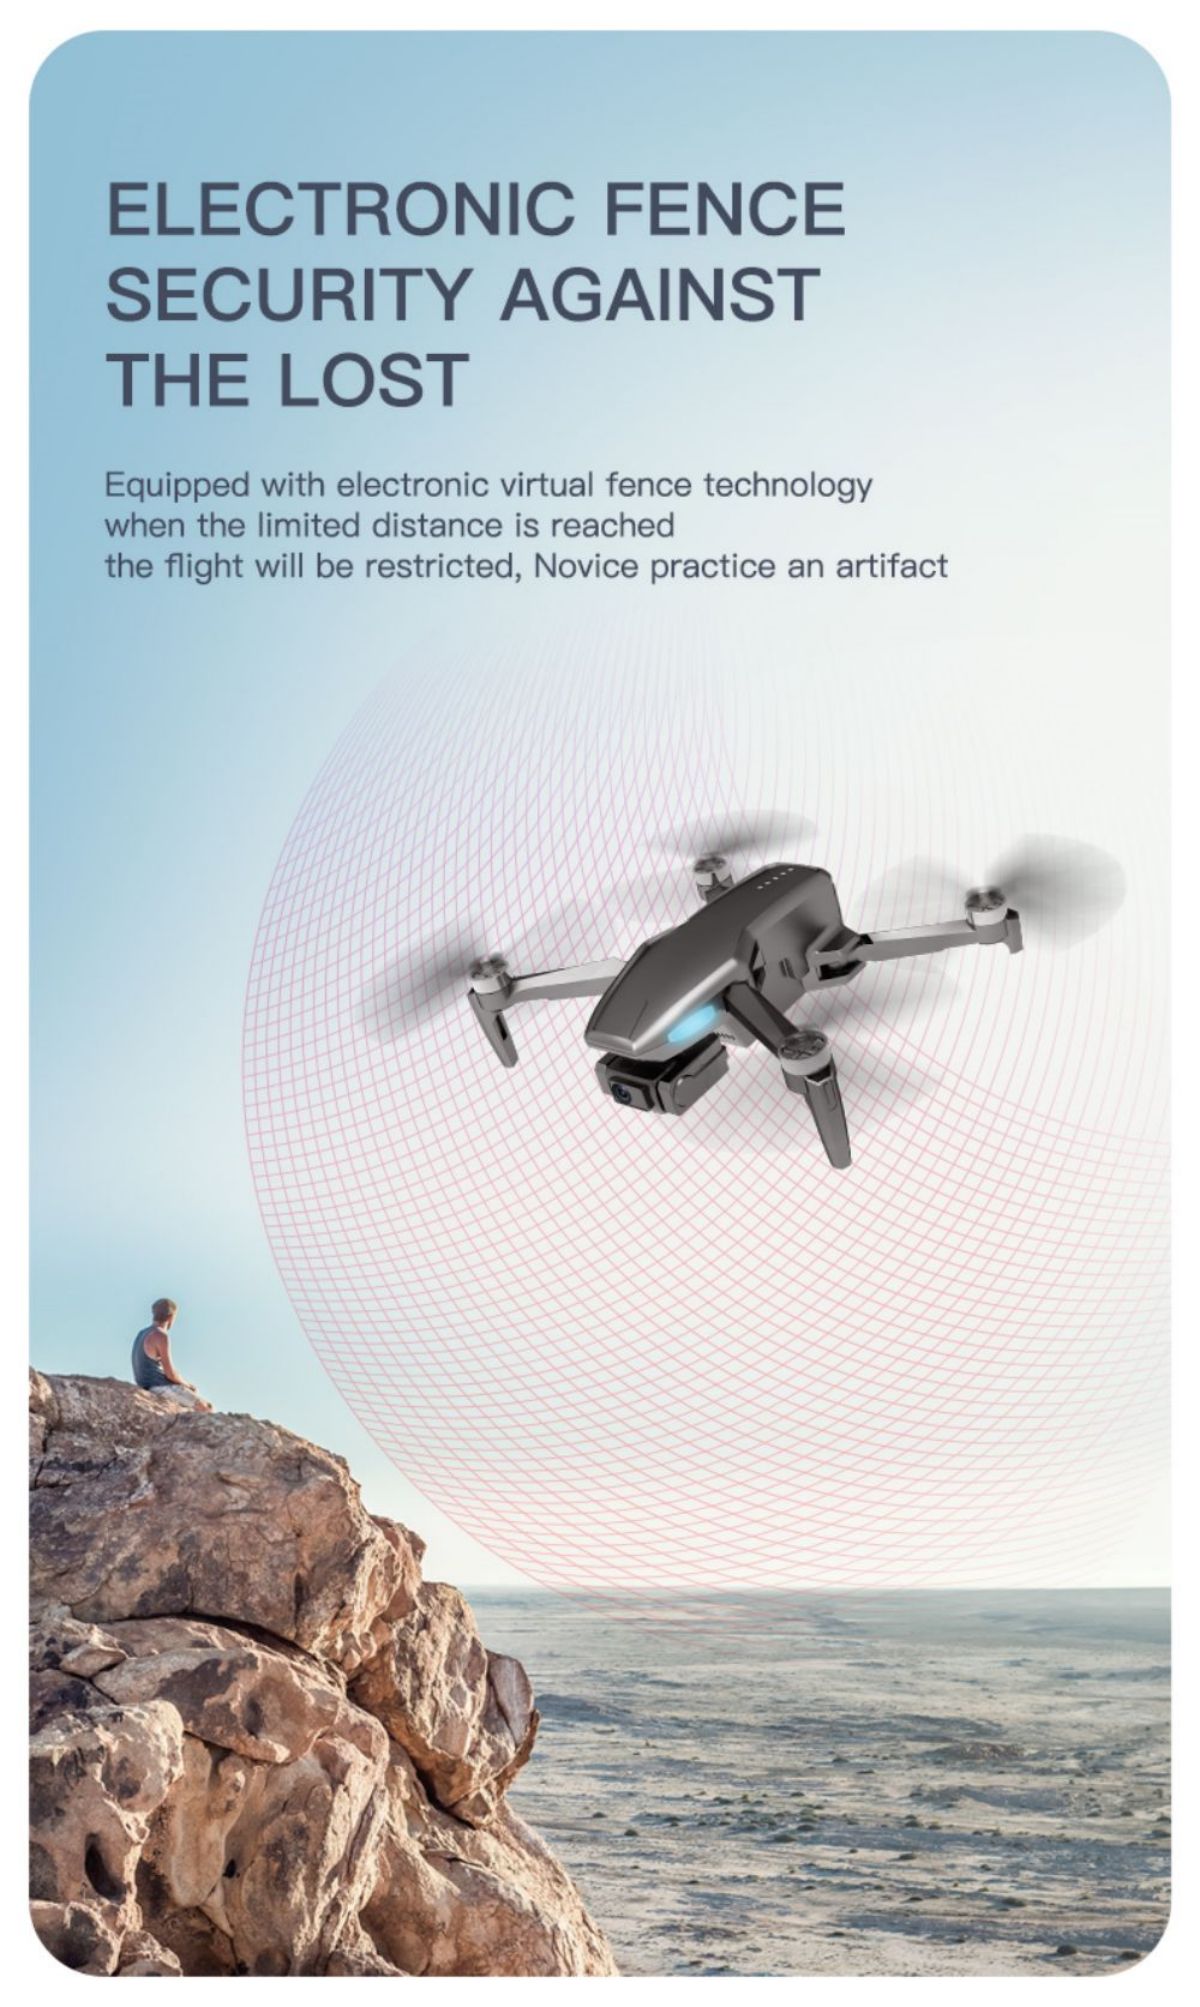 I-Drone Quadcopter (9)